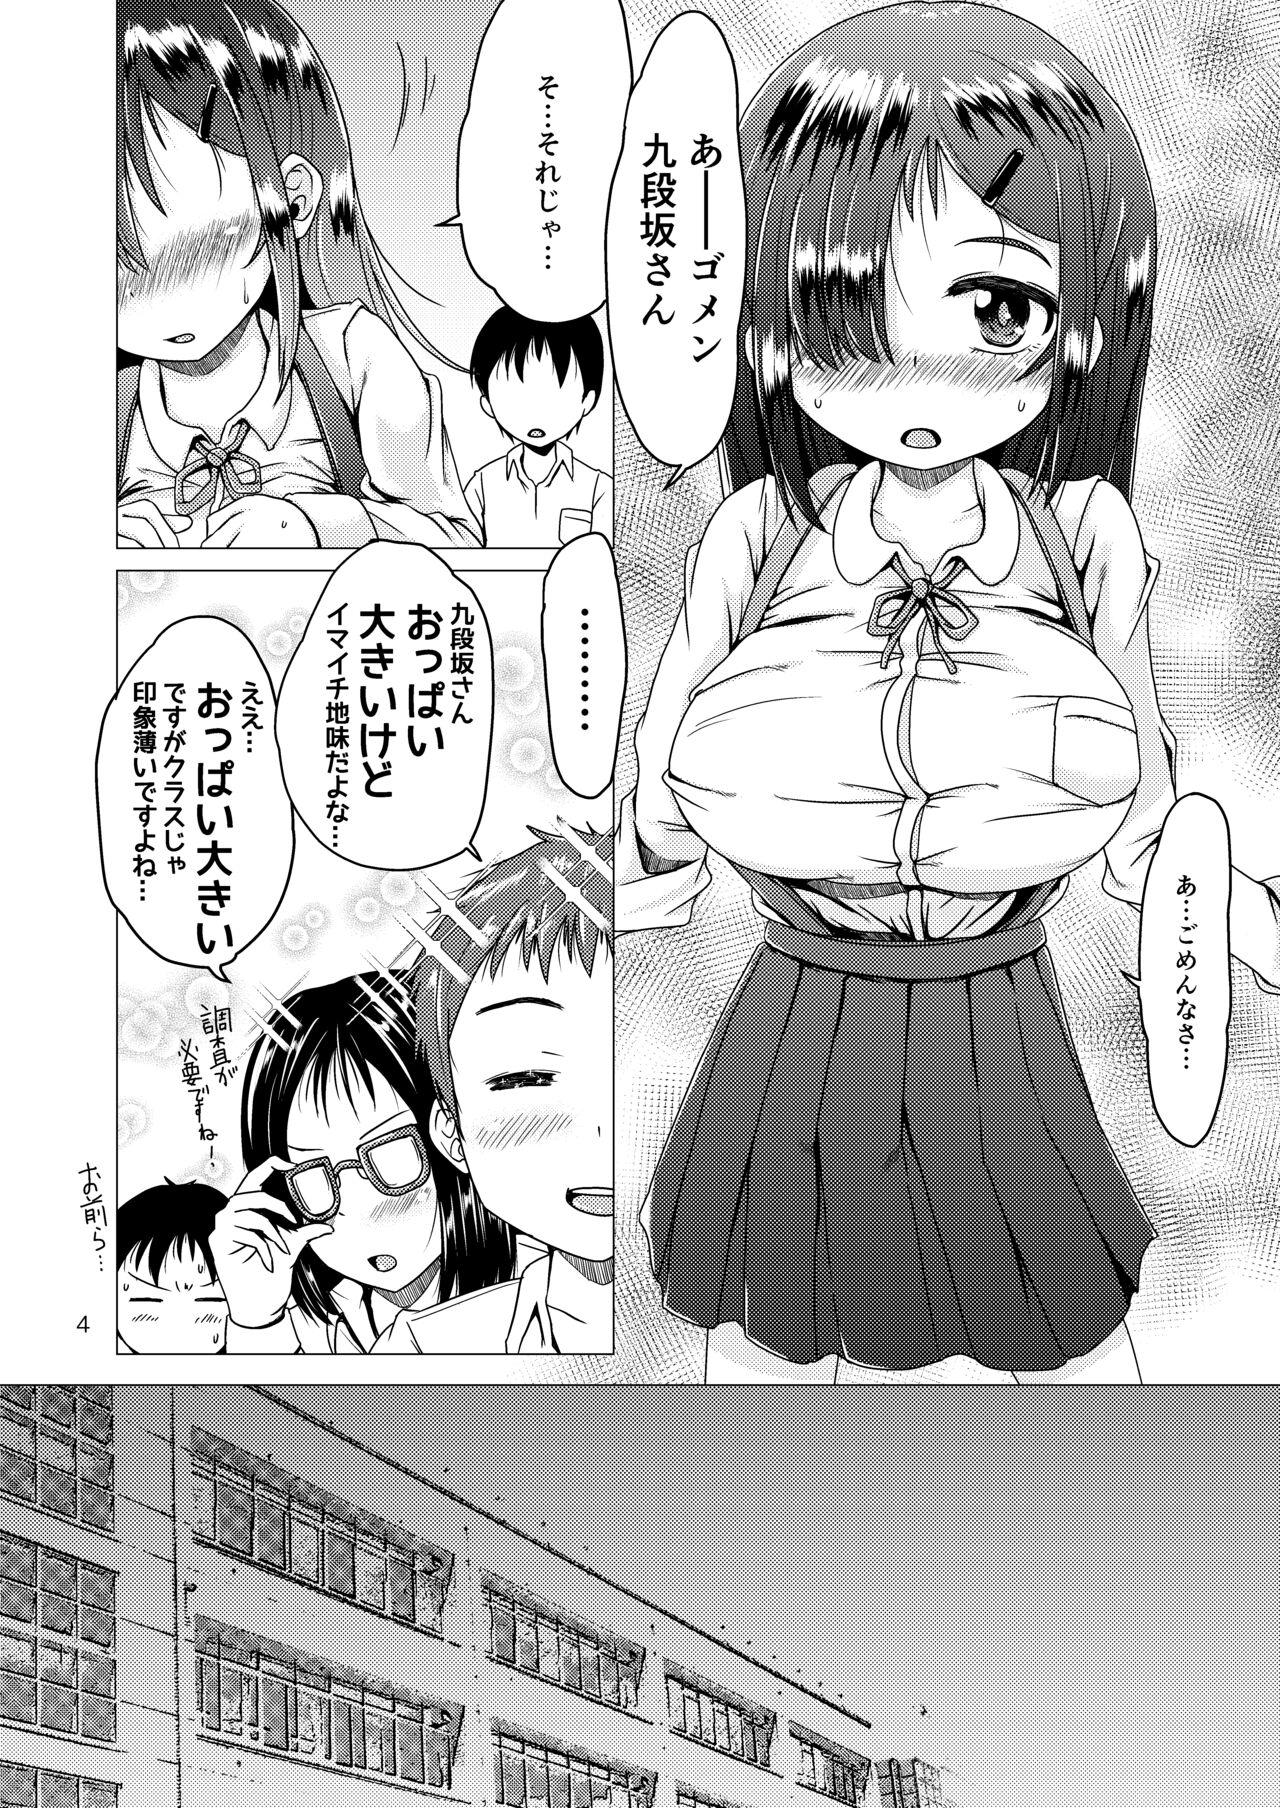 Grandpa トイレの花子さんが地味で巨乳なクラスメイトだった話。 - Original Emo - Page 4